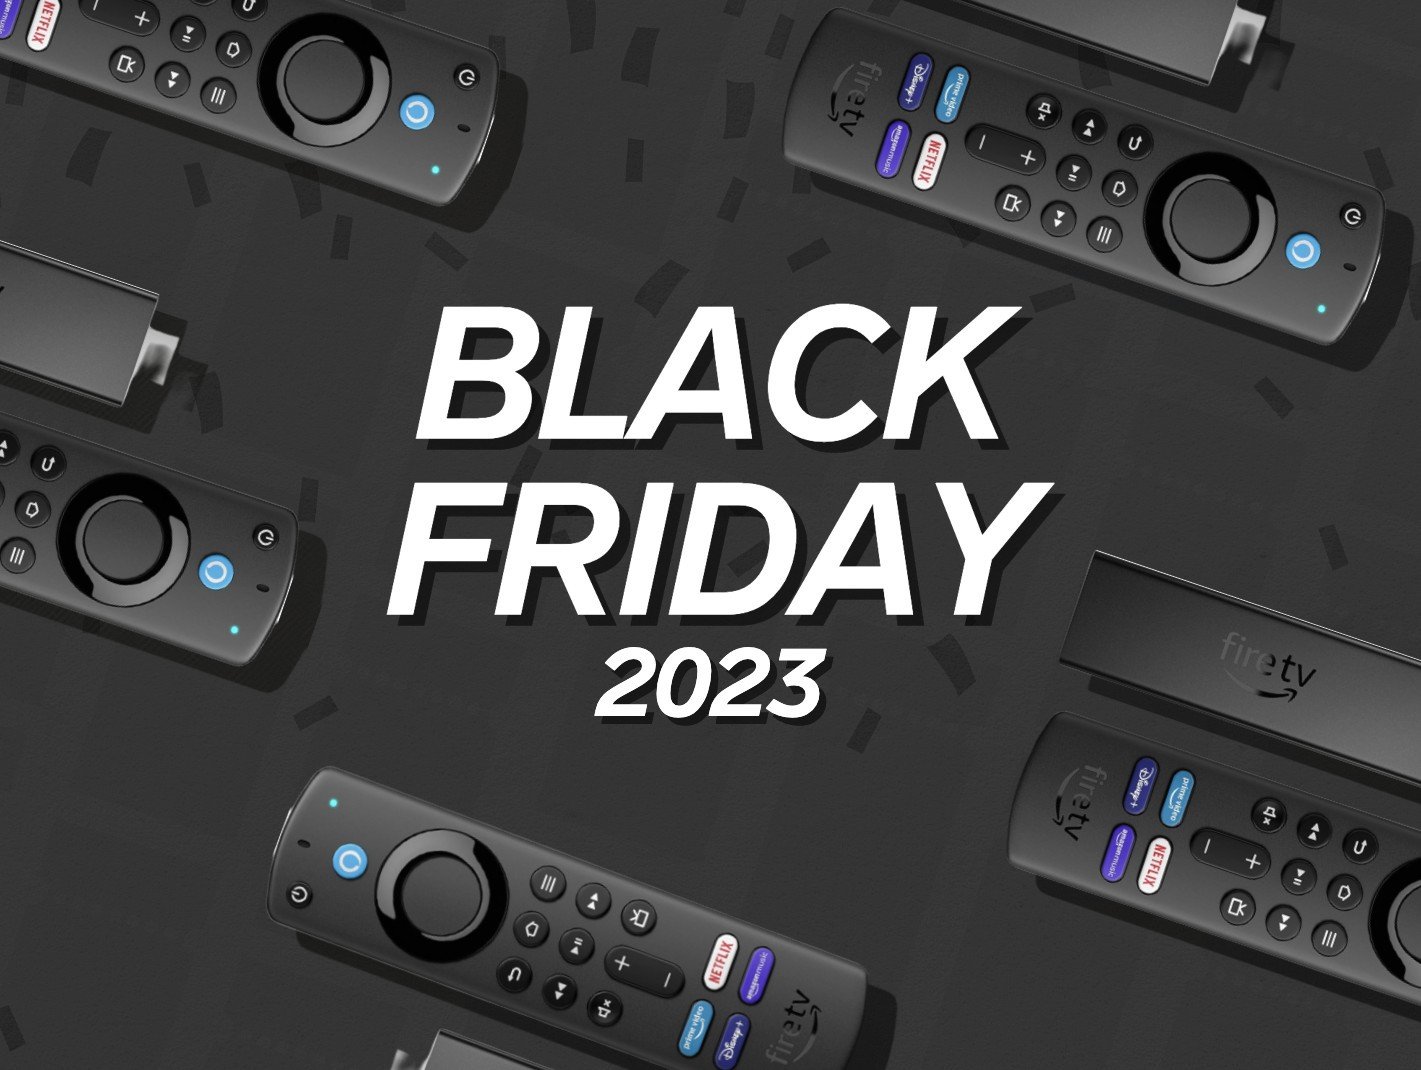 Diese Fire-TV-Stick-Angebote gibt es am Black Friday 2023.